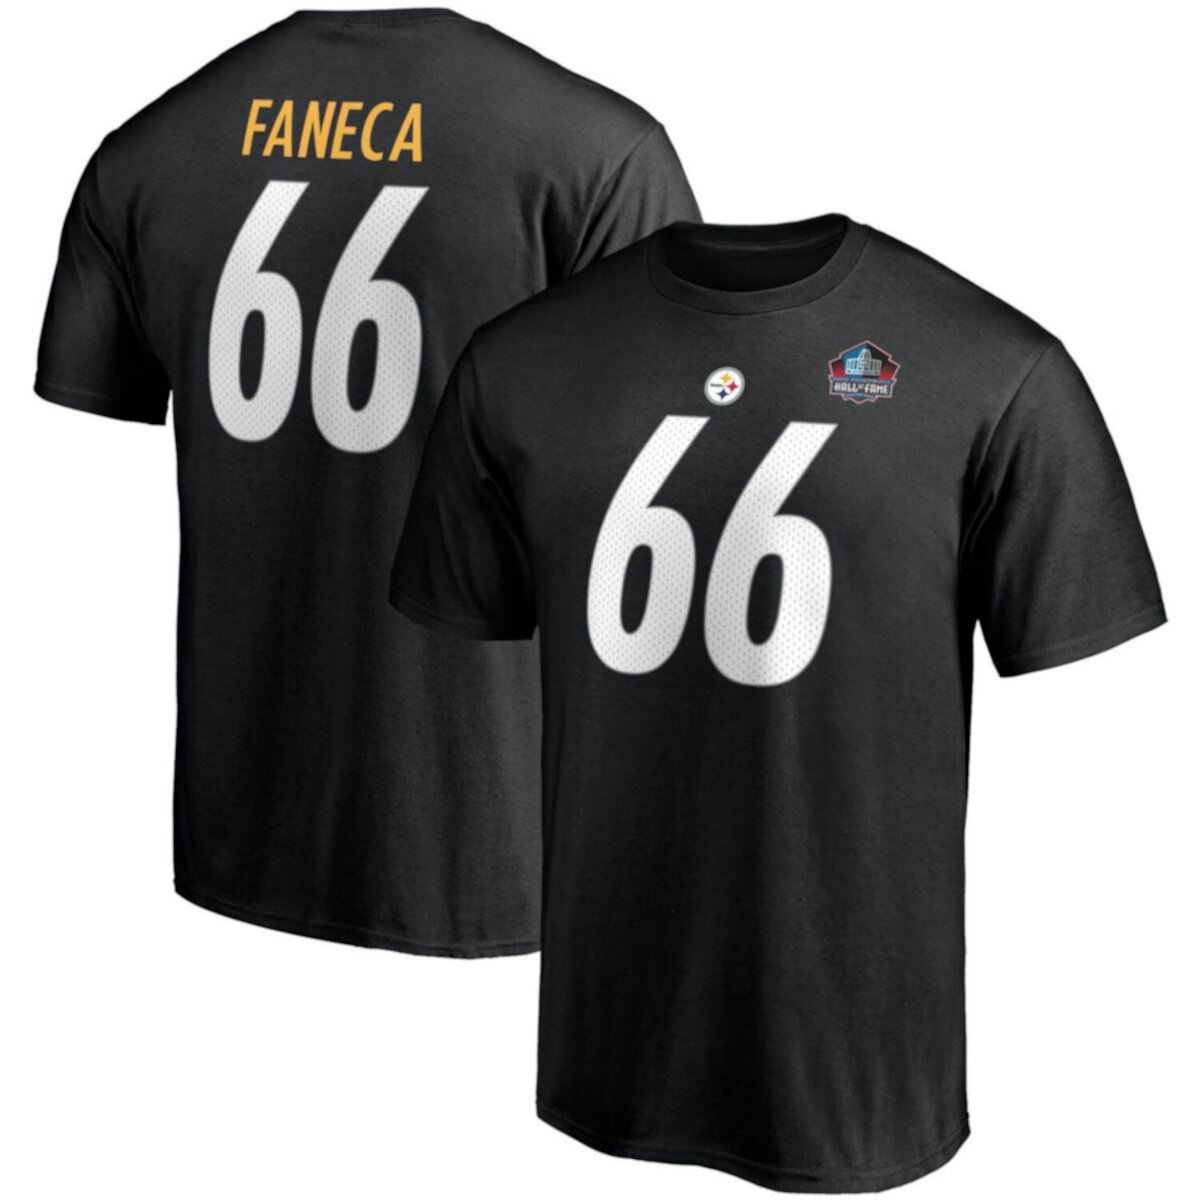 Мужская футболка Fanatics с брендом Alan Faneca, черная, «Питтсбург Стилерс», Зал славы НФЛ, класс 2021, имя и номер Fanatics